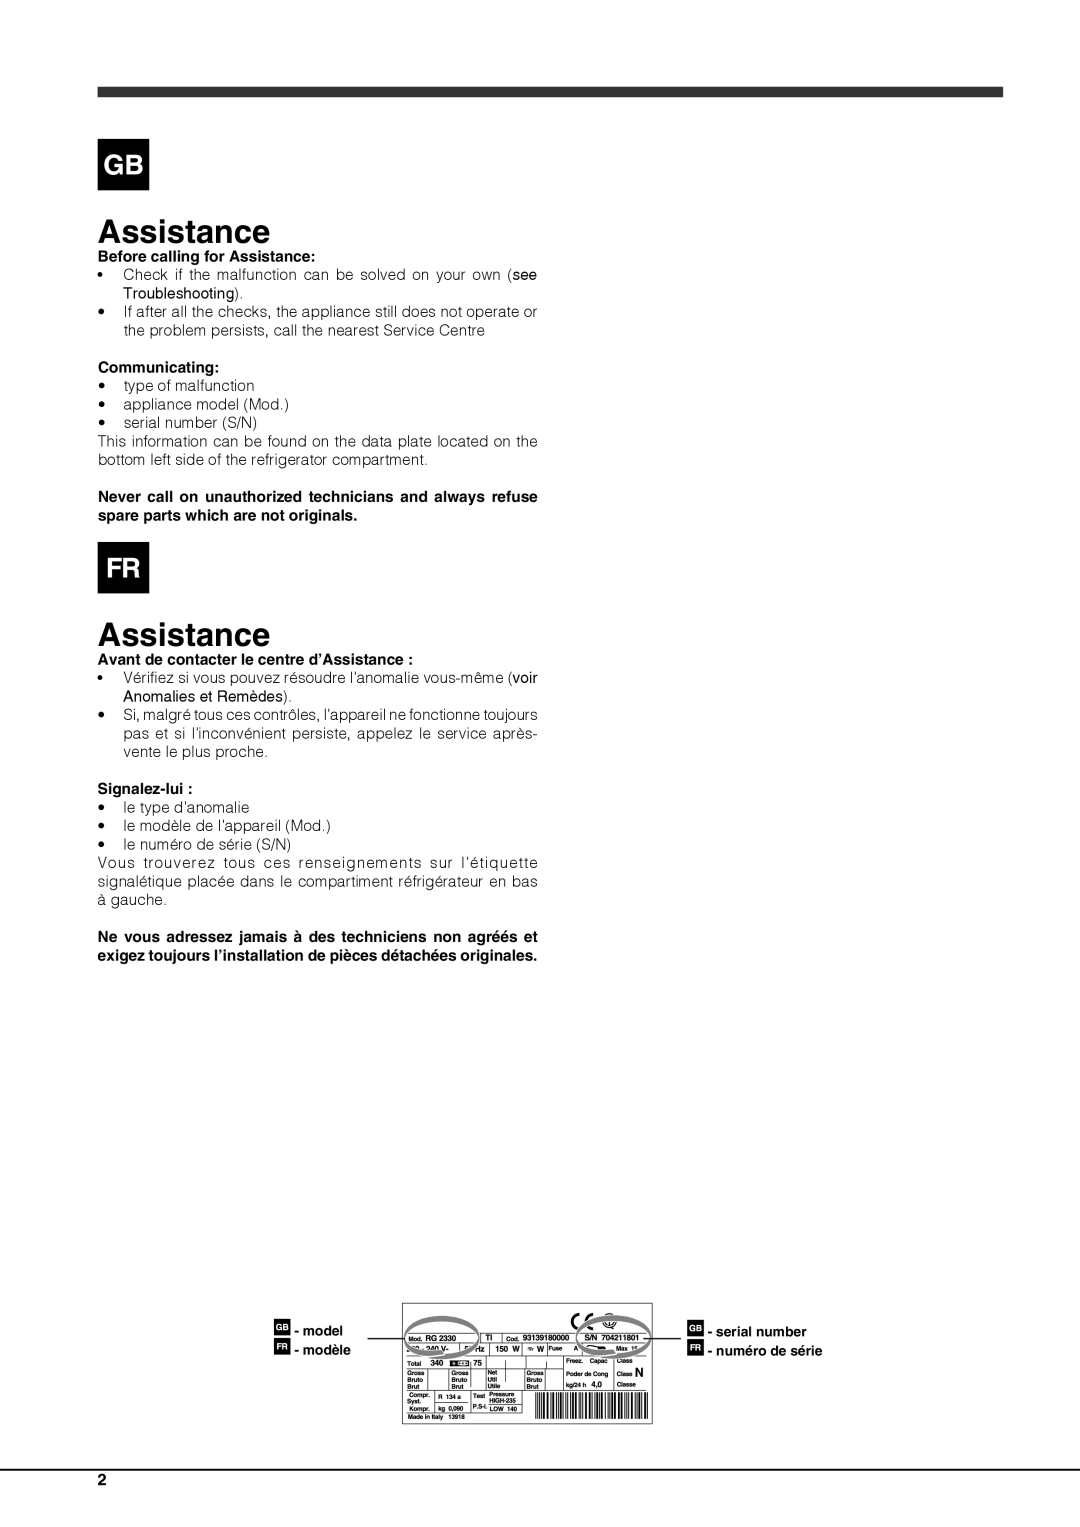 Ariston BCB 33 A F (AUS) manual Before calling for Assistance, Communicating, Avant de contacter le centre d’Assistance 